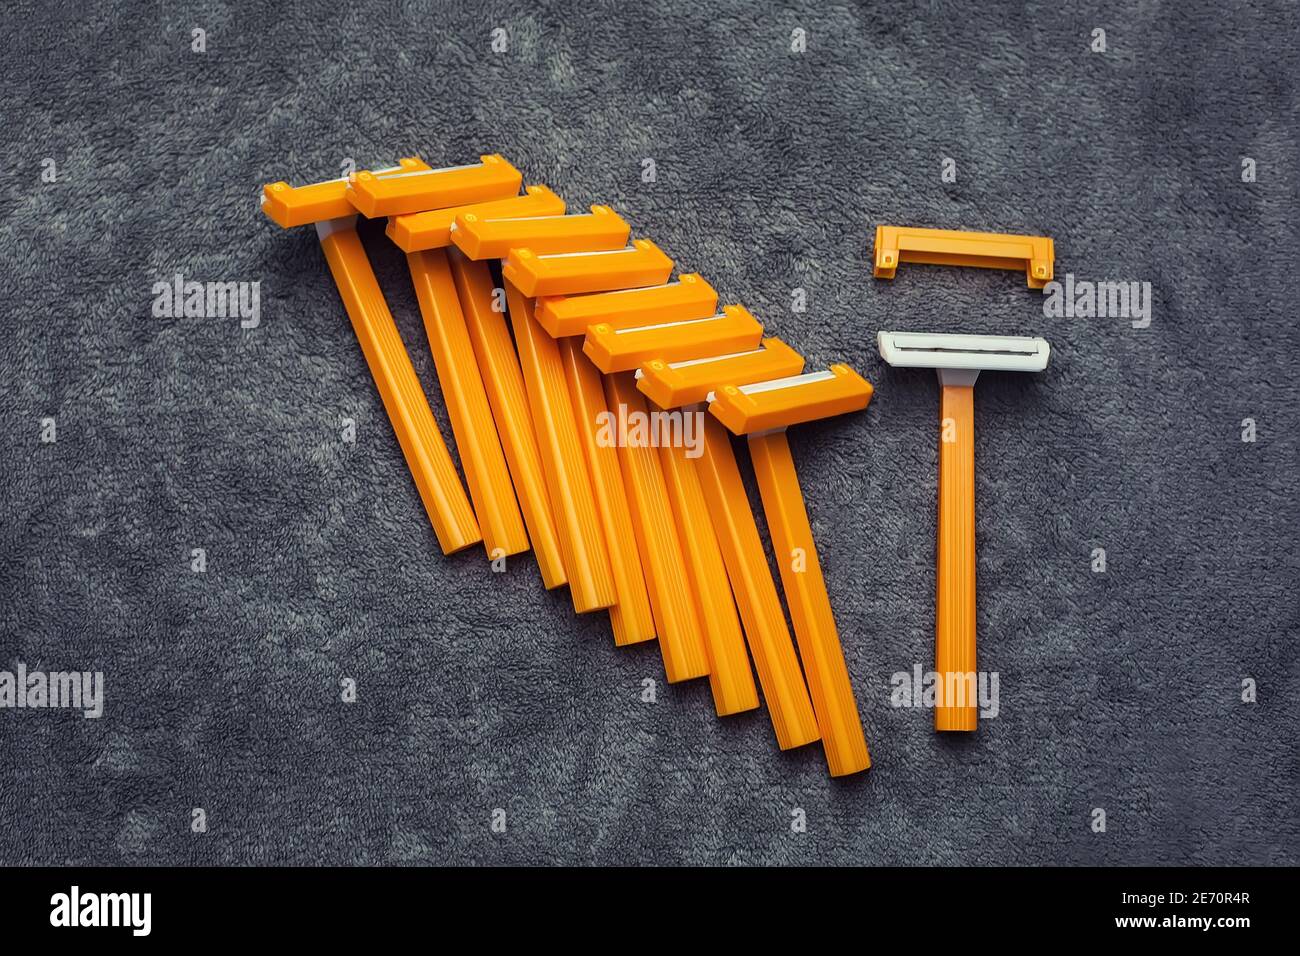 Viele Kunststoff Einweg billig rasieren orange gelb Rasierer mit Kappen auf  grauem Hintergrund, Haarentfernung Werkzeuge Set Stockfotografie - Alamy